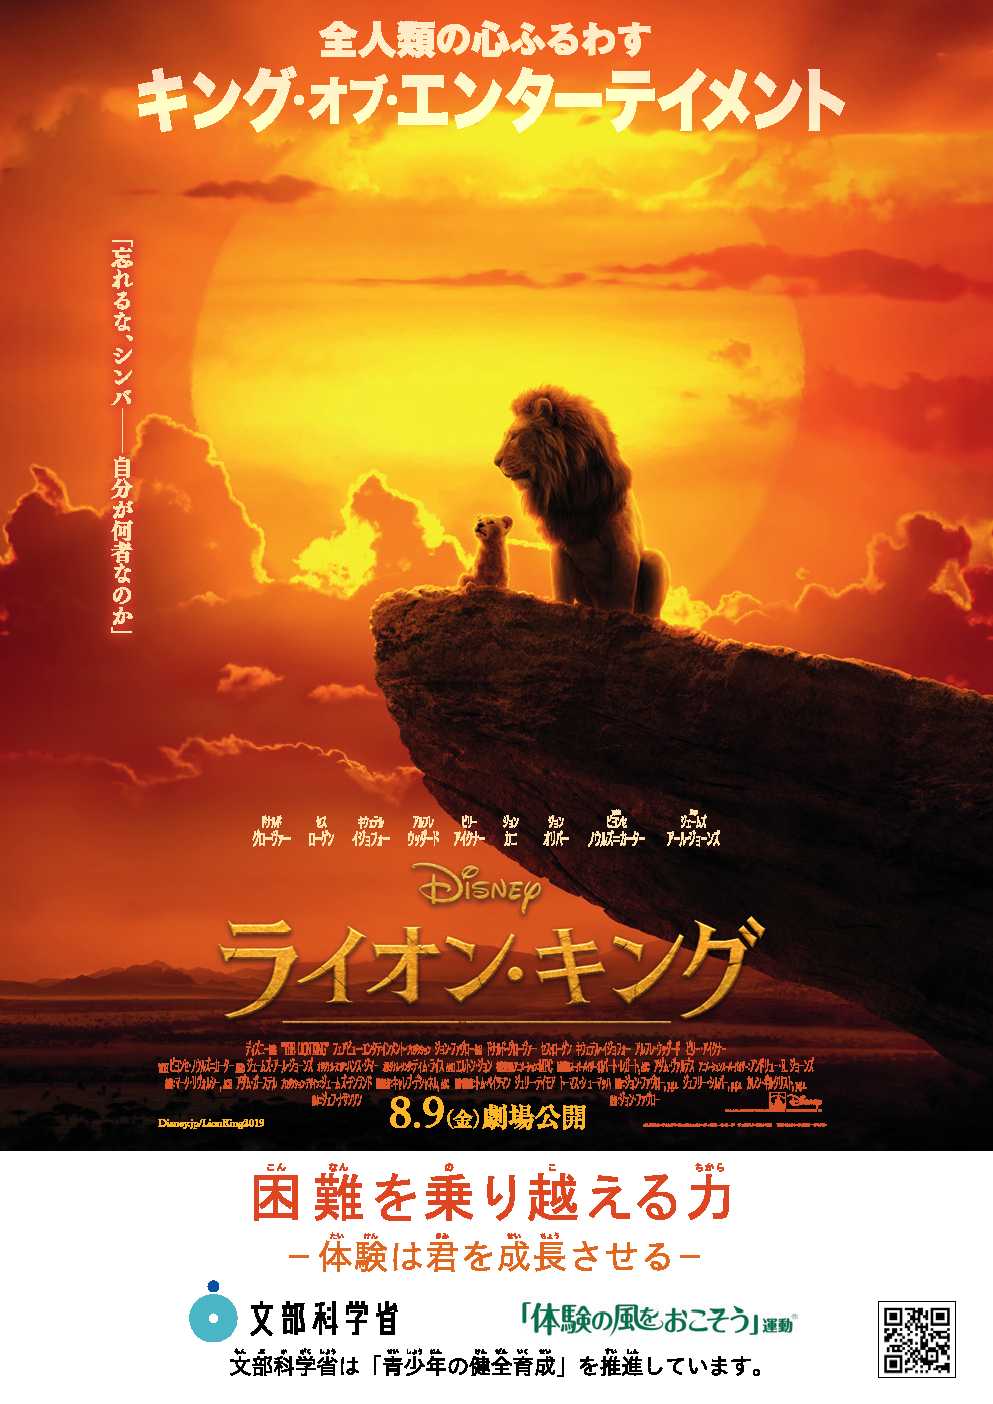 映画『ライオン・キング』のポスター